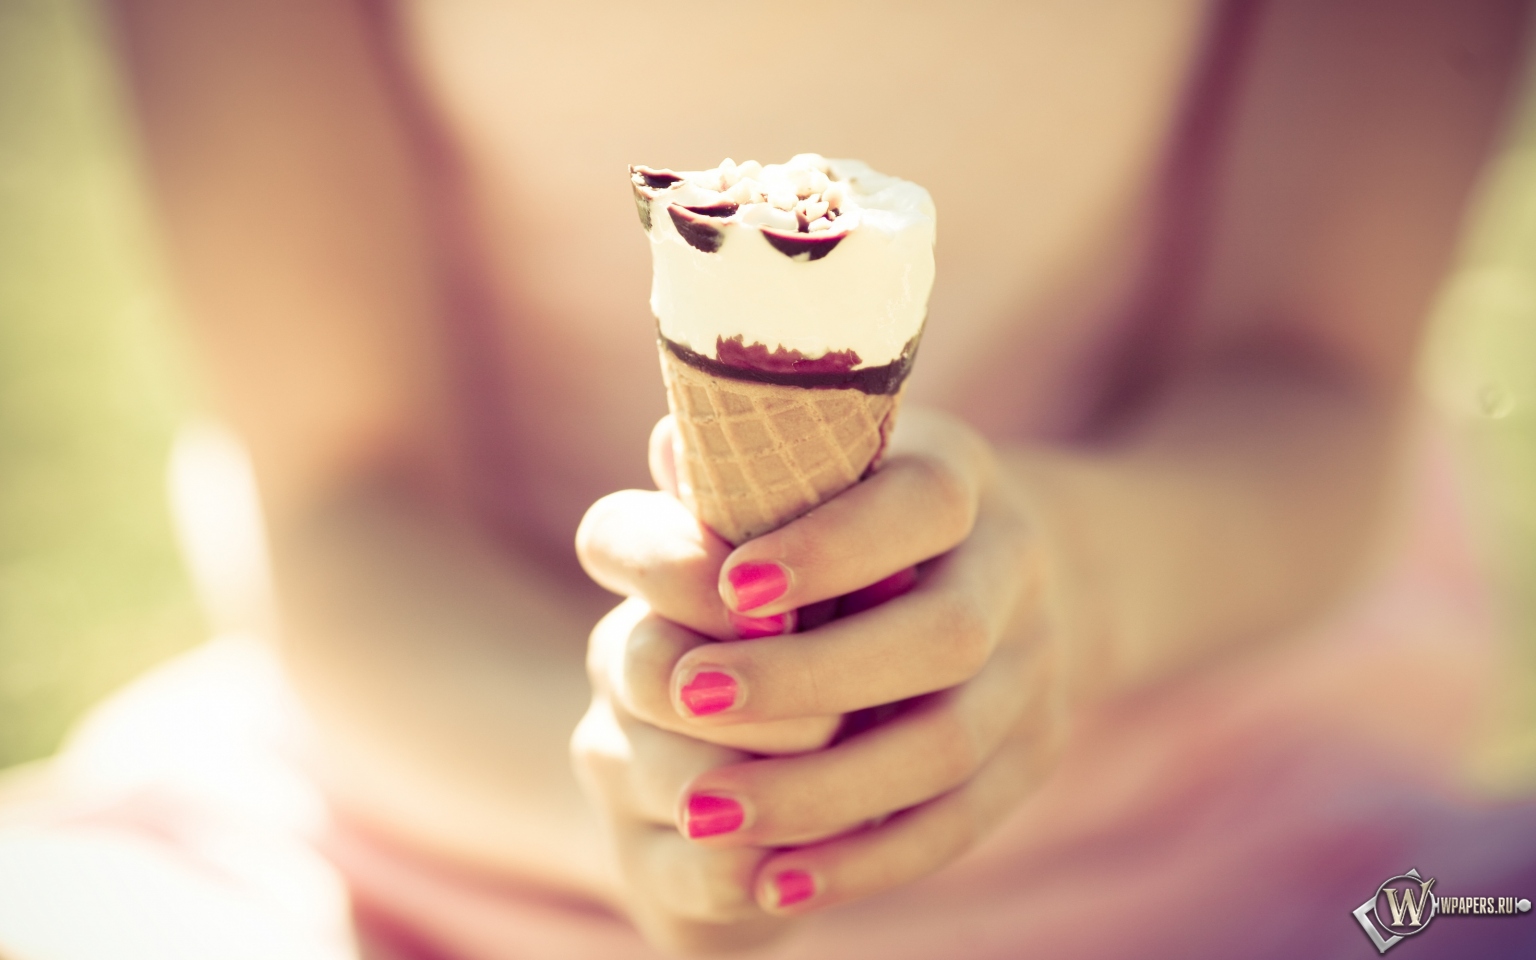 Шоколадное мороженое 1536x960